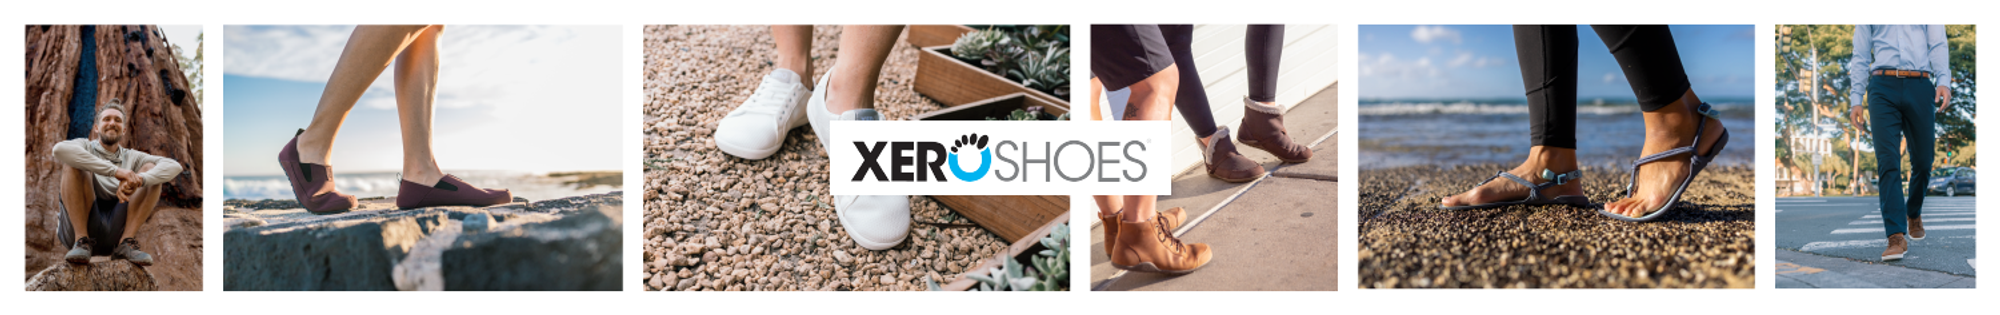 Xero Shoes Barefoot boty pro děti i dospělé v Přerově